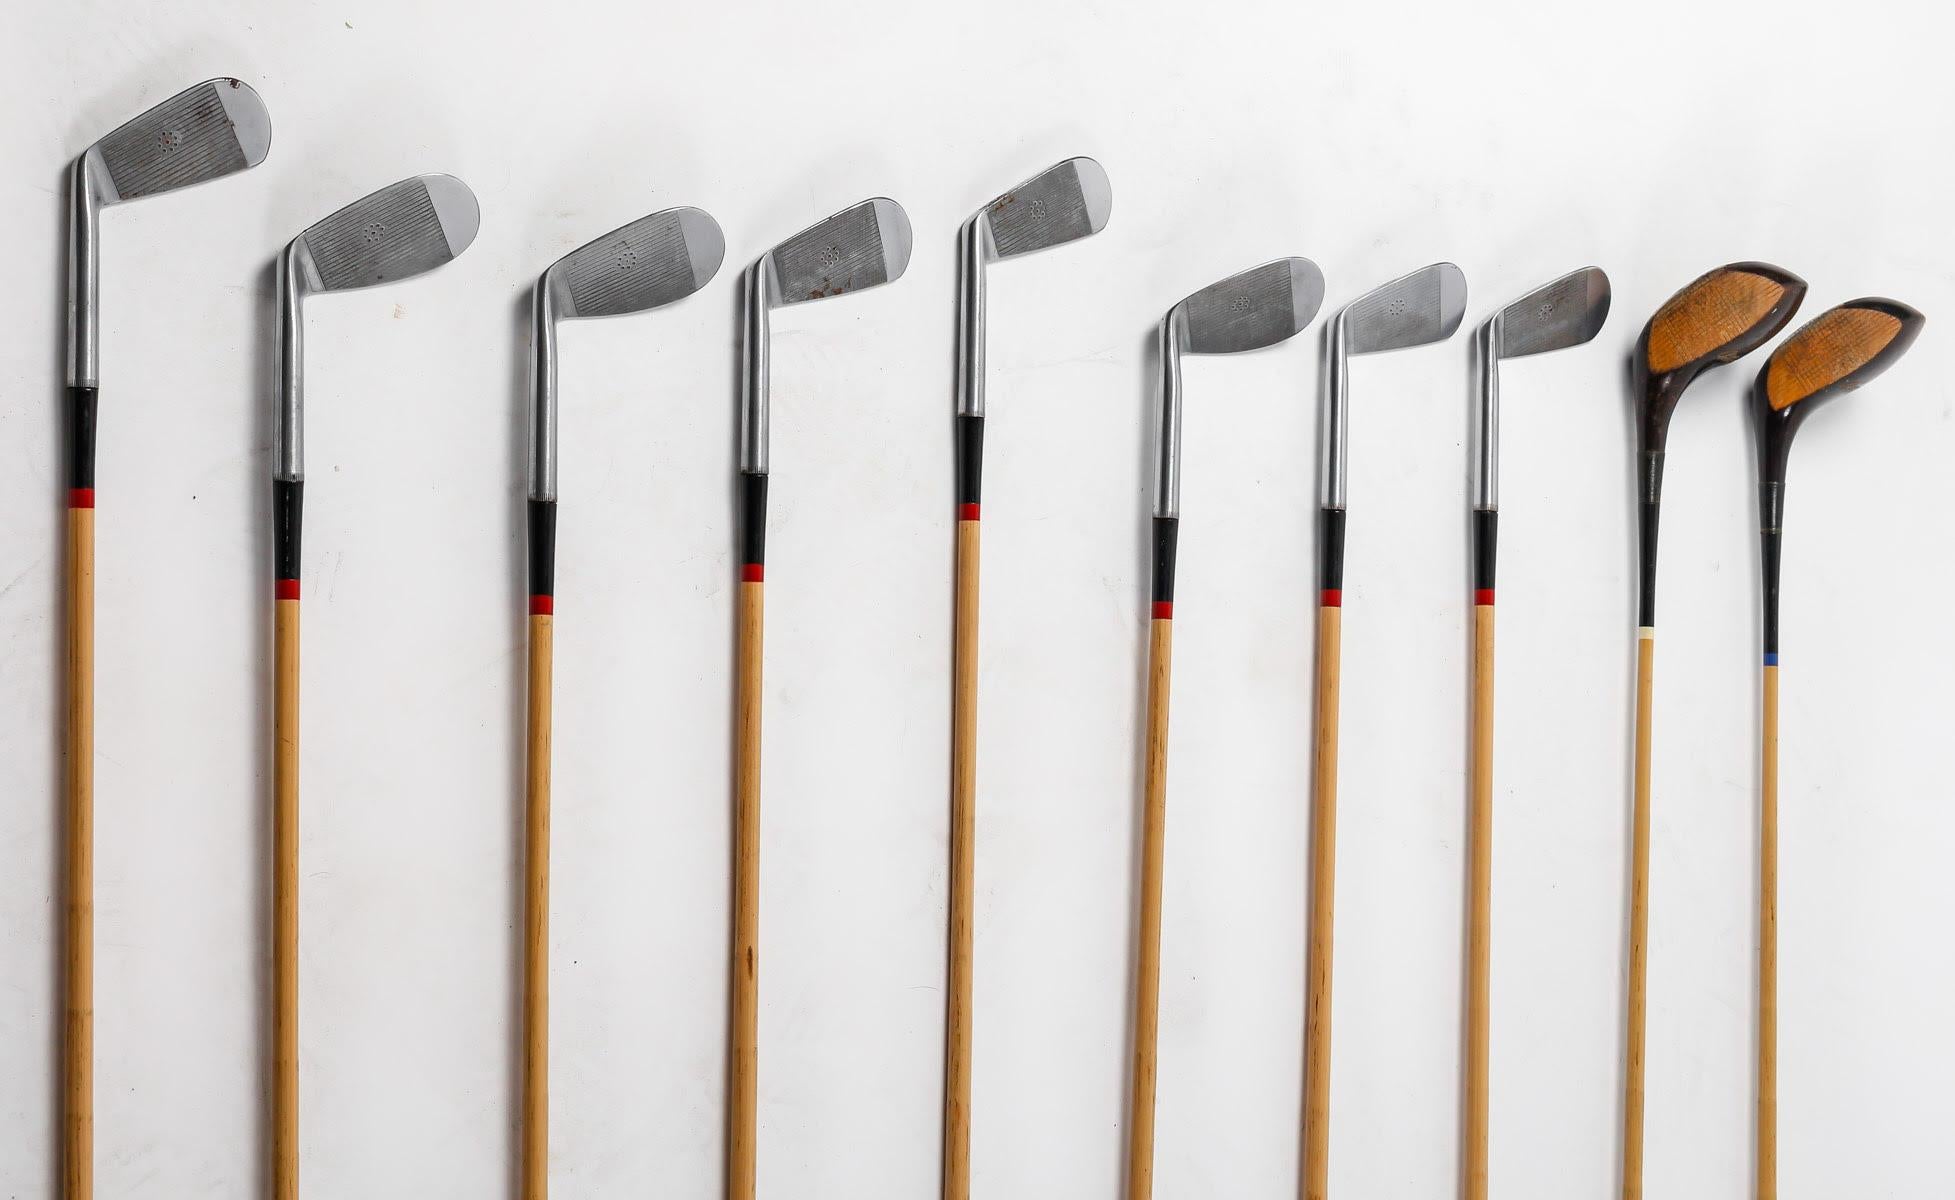 Suite von 10 Golfschlägern aus den 1930er Jahren.

Suite von 10 Vintage-Golfschlägern, Holzgriffe, aus den 1930er Jahren, darunter 8 Eisen und 2 Holz.

Maße jeweils: H: 105cm, B: 10cm, T: 7cm